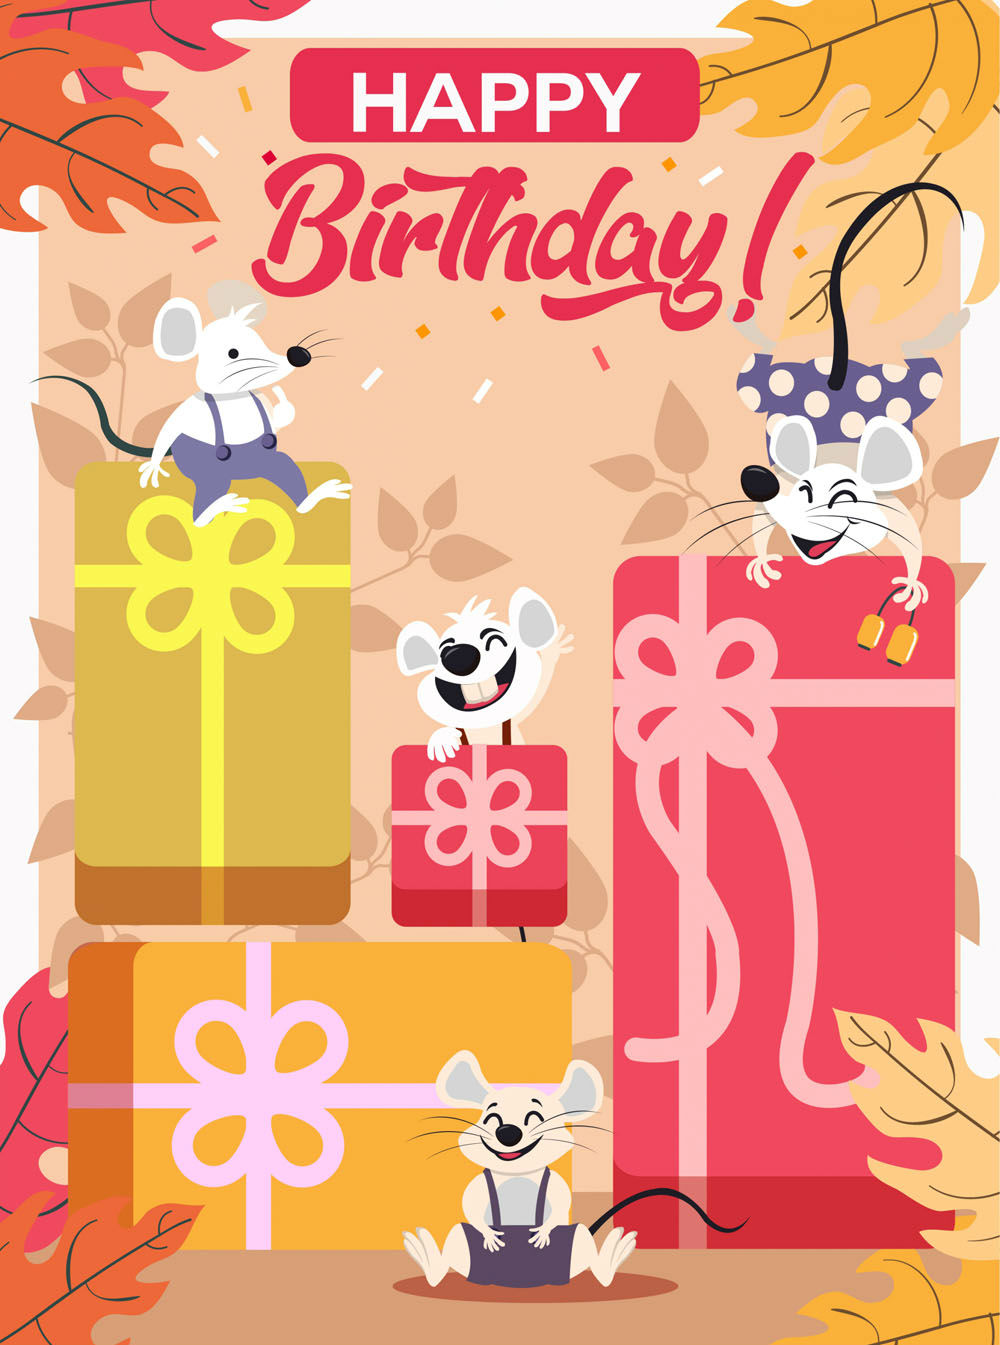 含jpg预览图,关键字:礼物,树叶,生日快乐,happy birthday,创意,老鼠